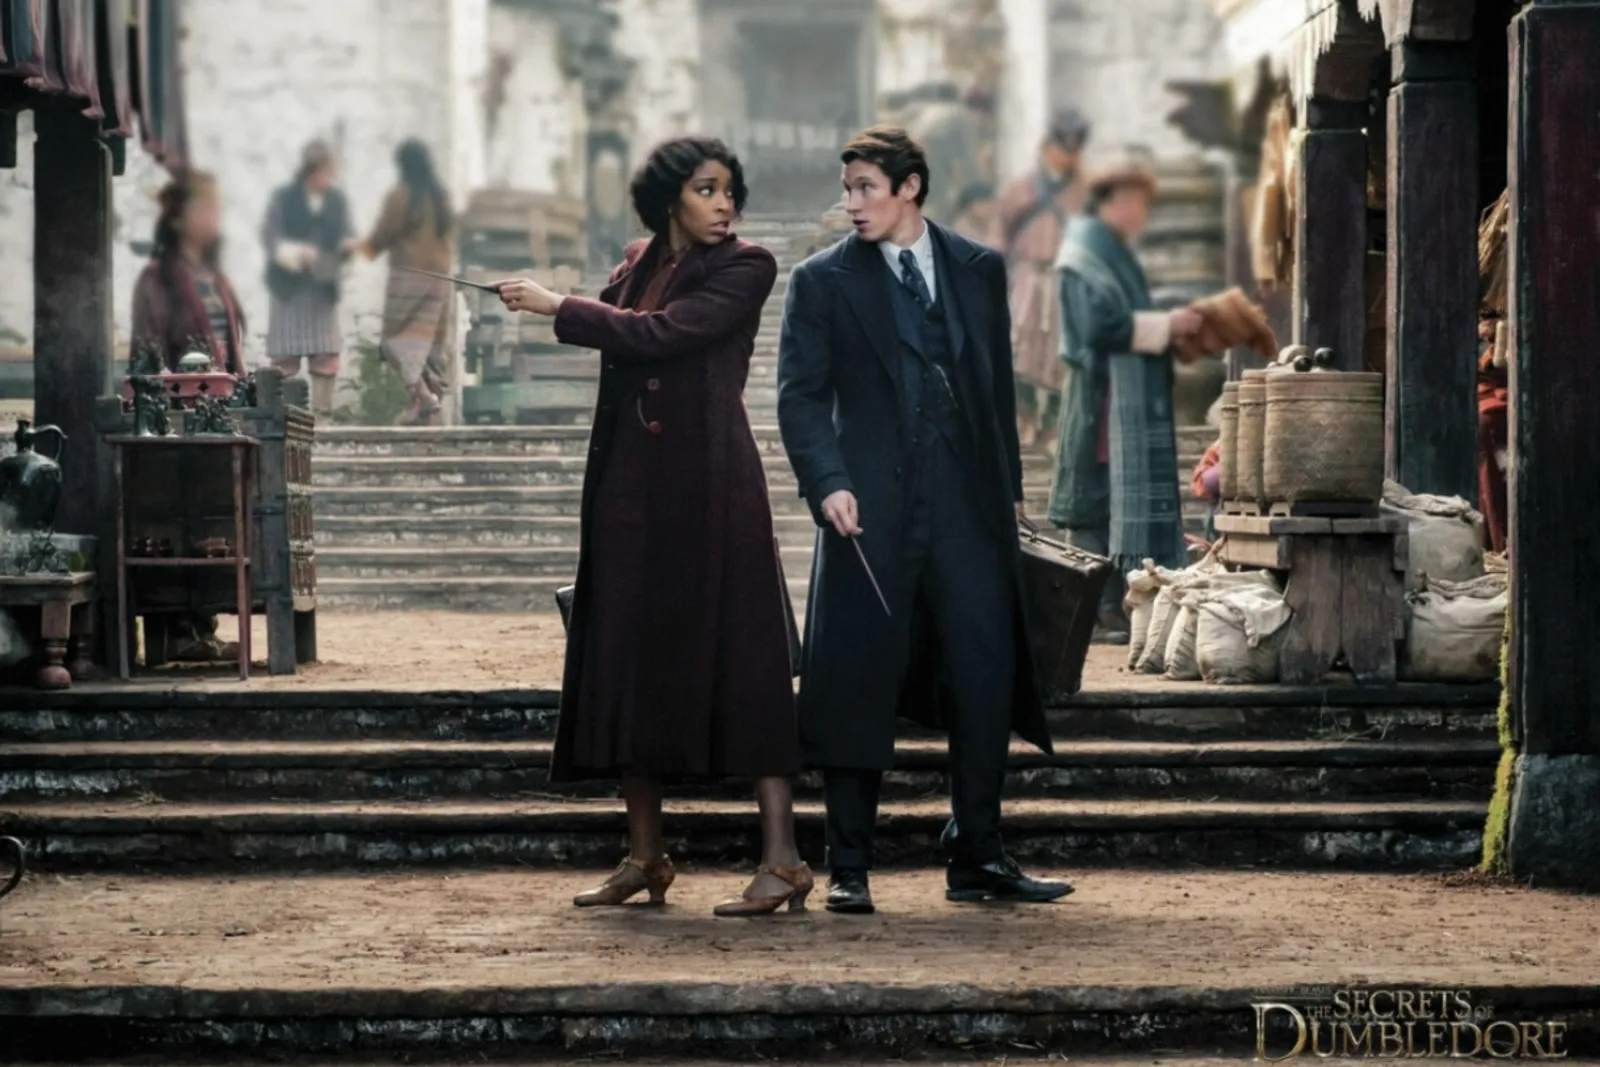 5 Hal Paling Menarik Perhatian di Film ‘The Secrets of Dumbledore'